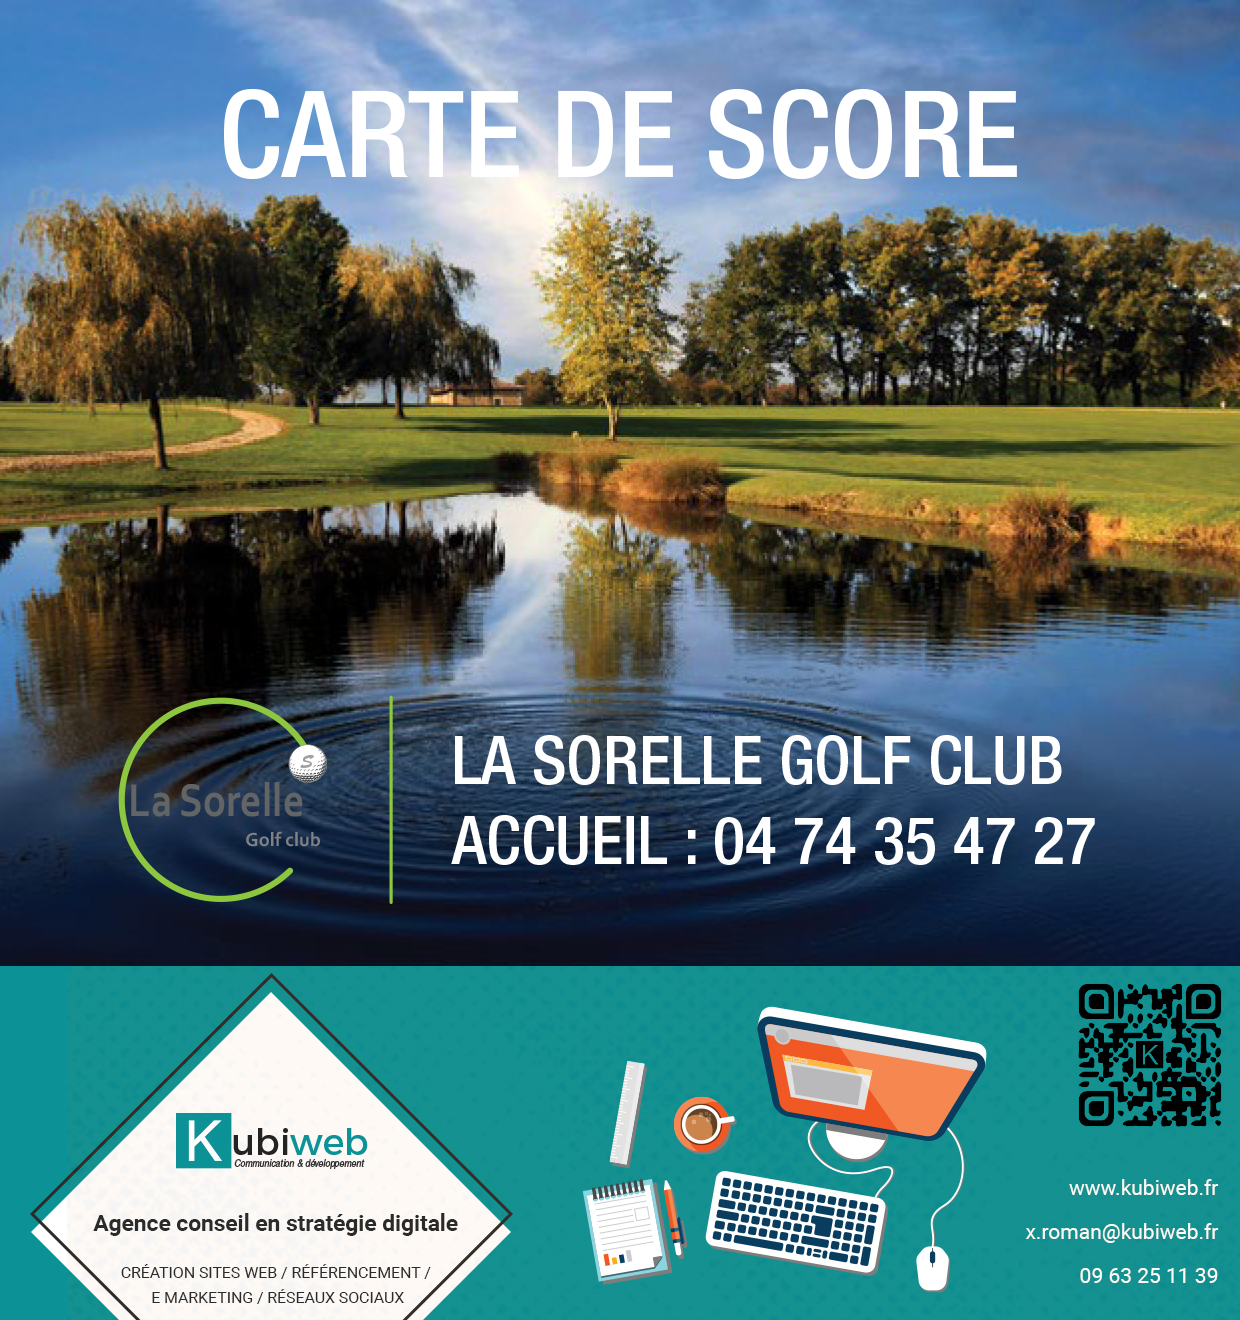 Kubiweb sponsorise le golf de La Sorelle